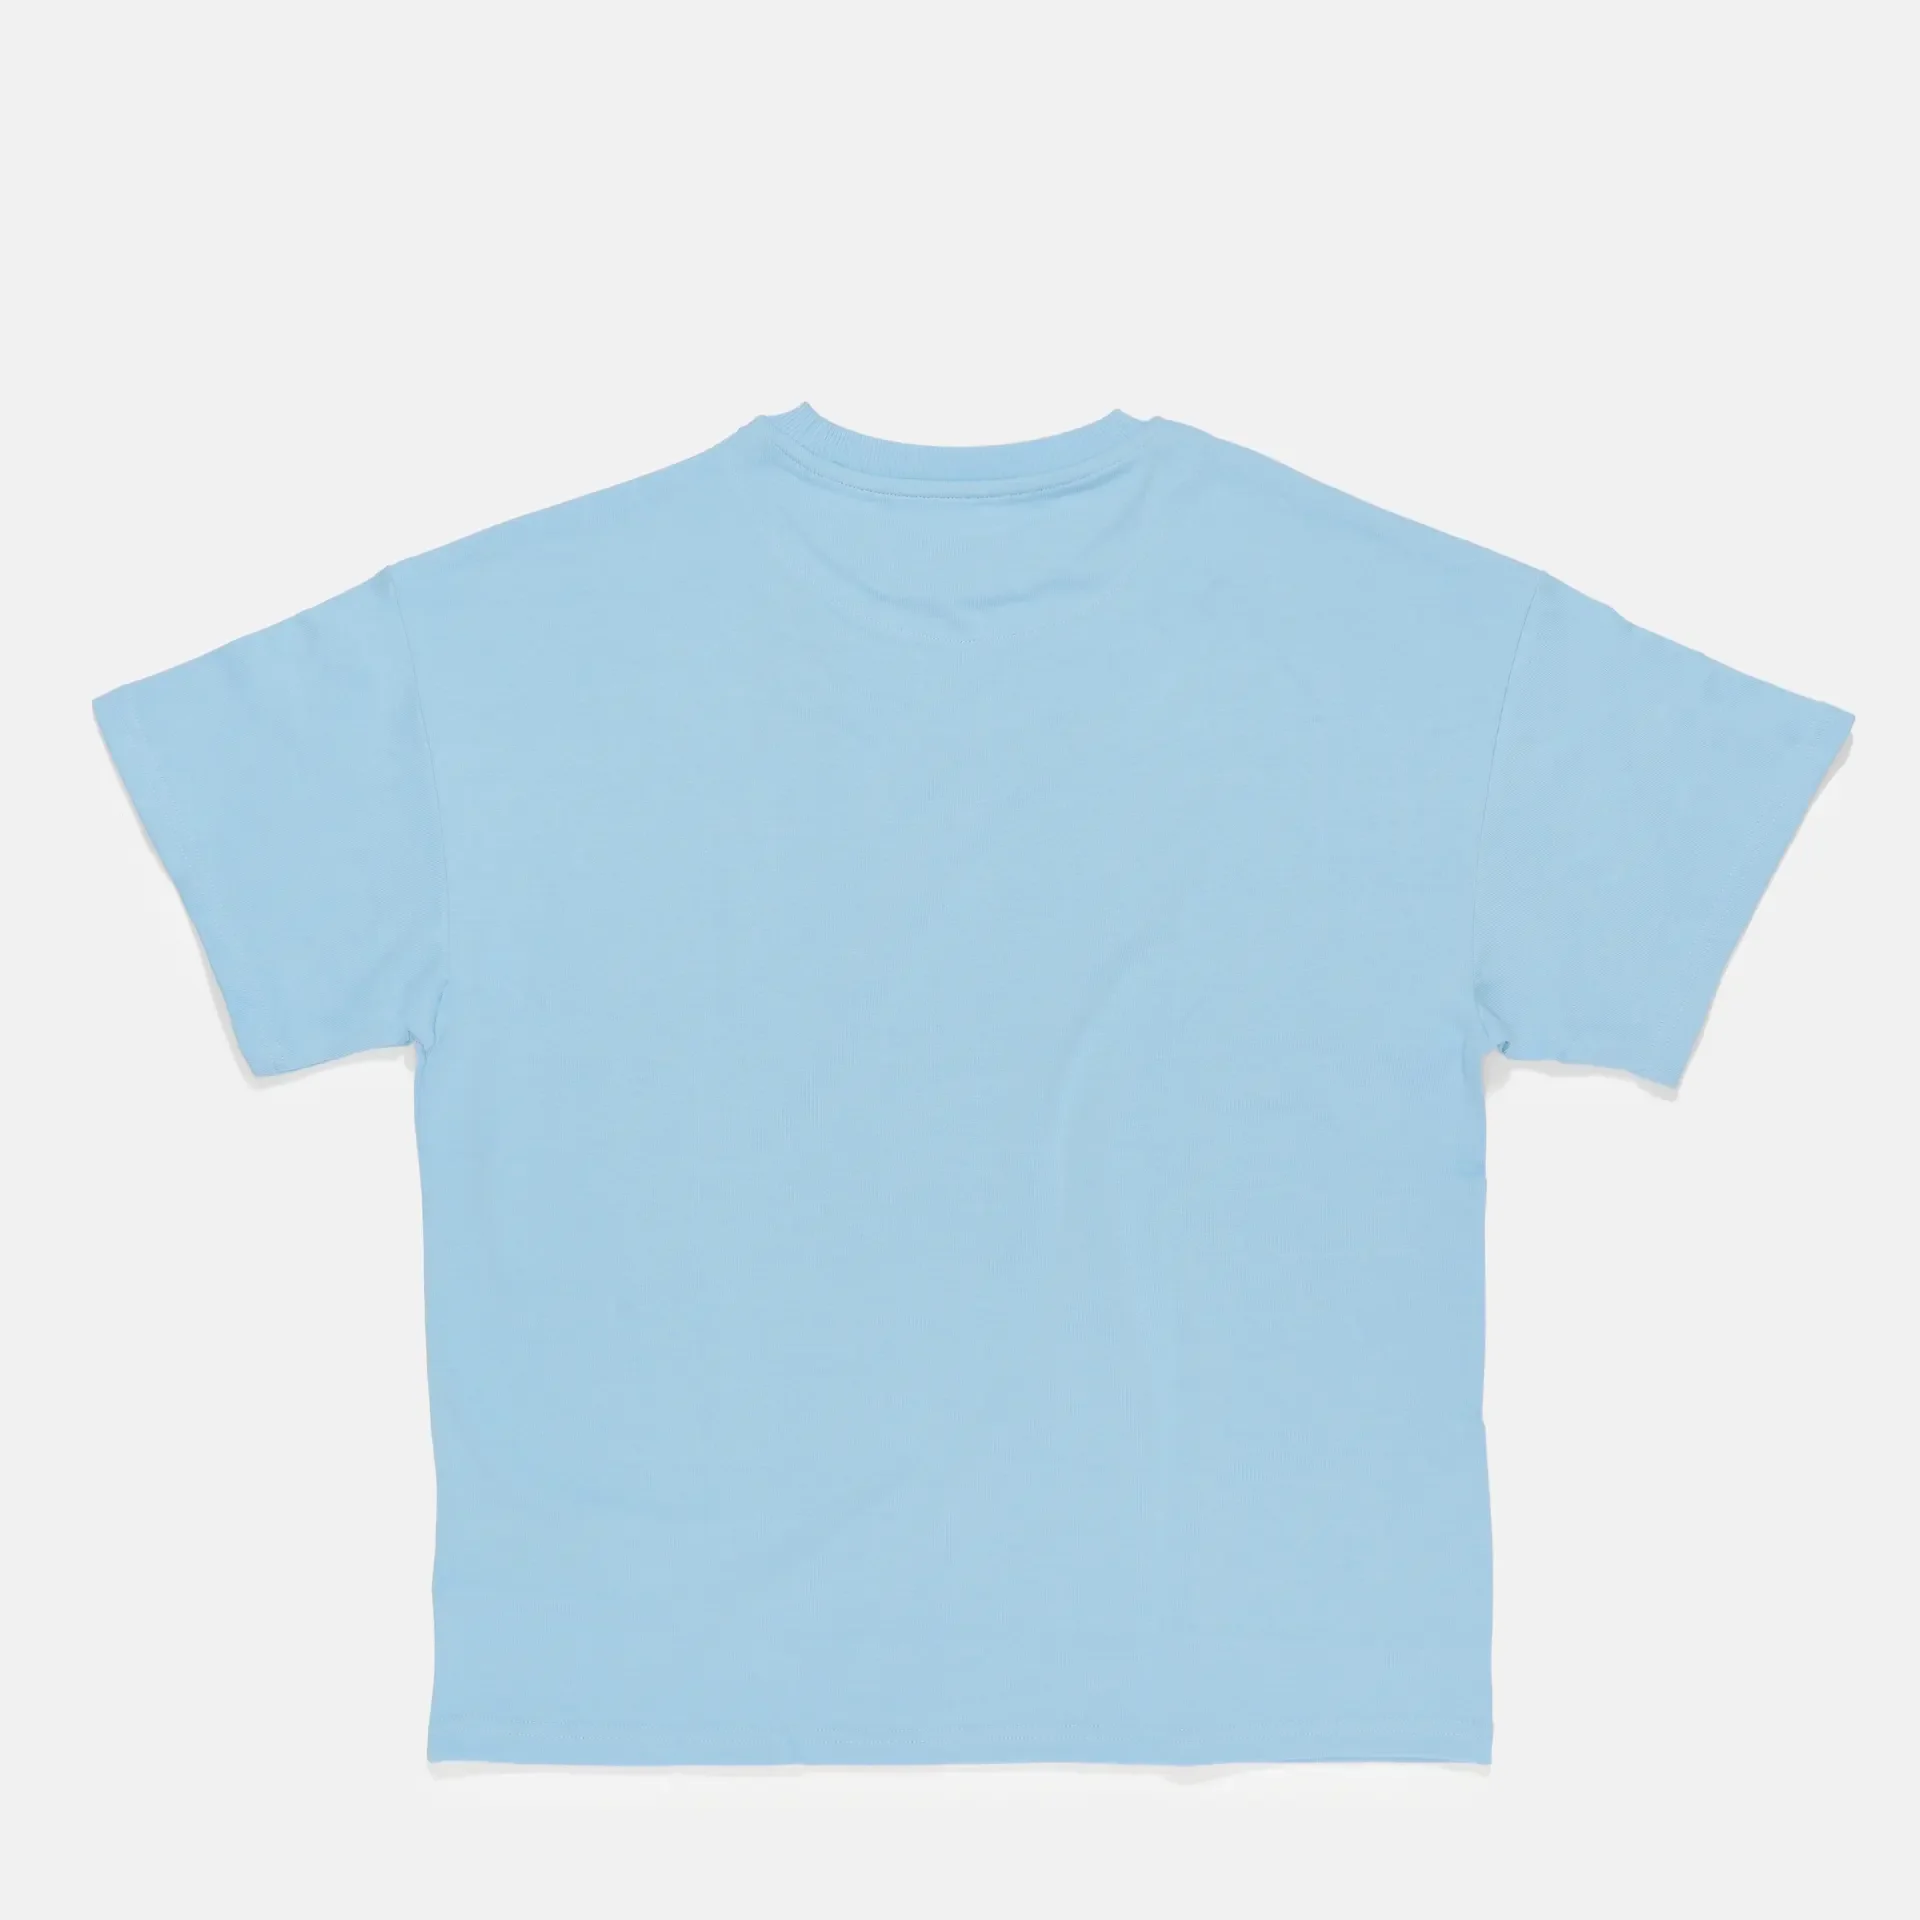 Karl Kani Small Signature Boxy T-Shirt Light Blue